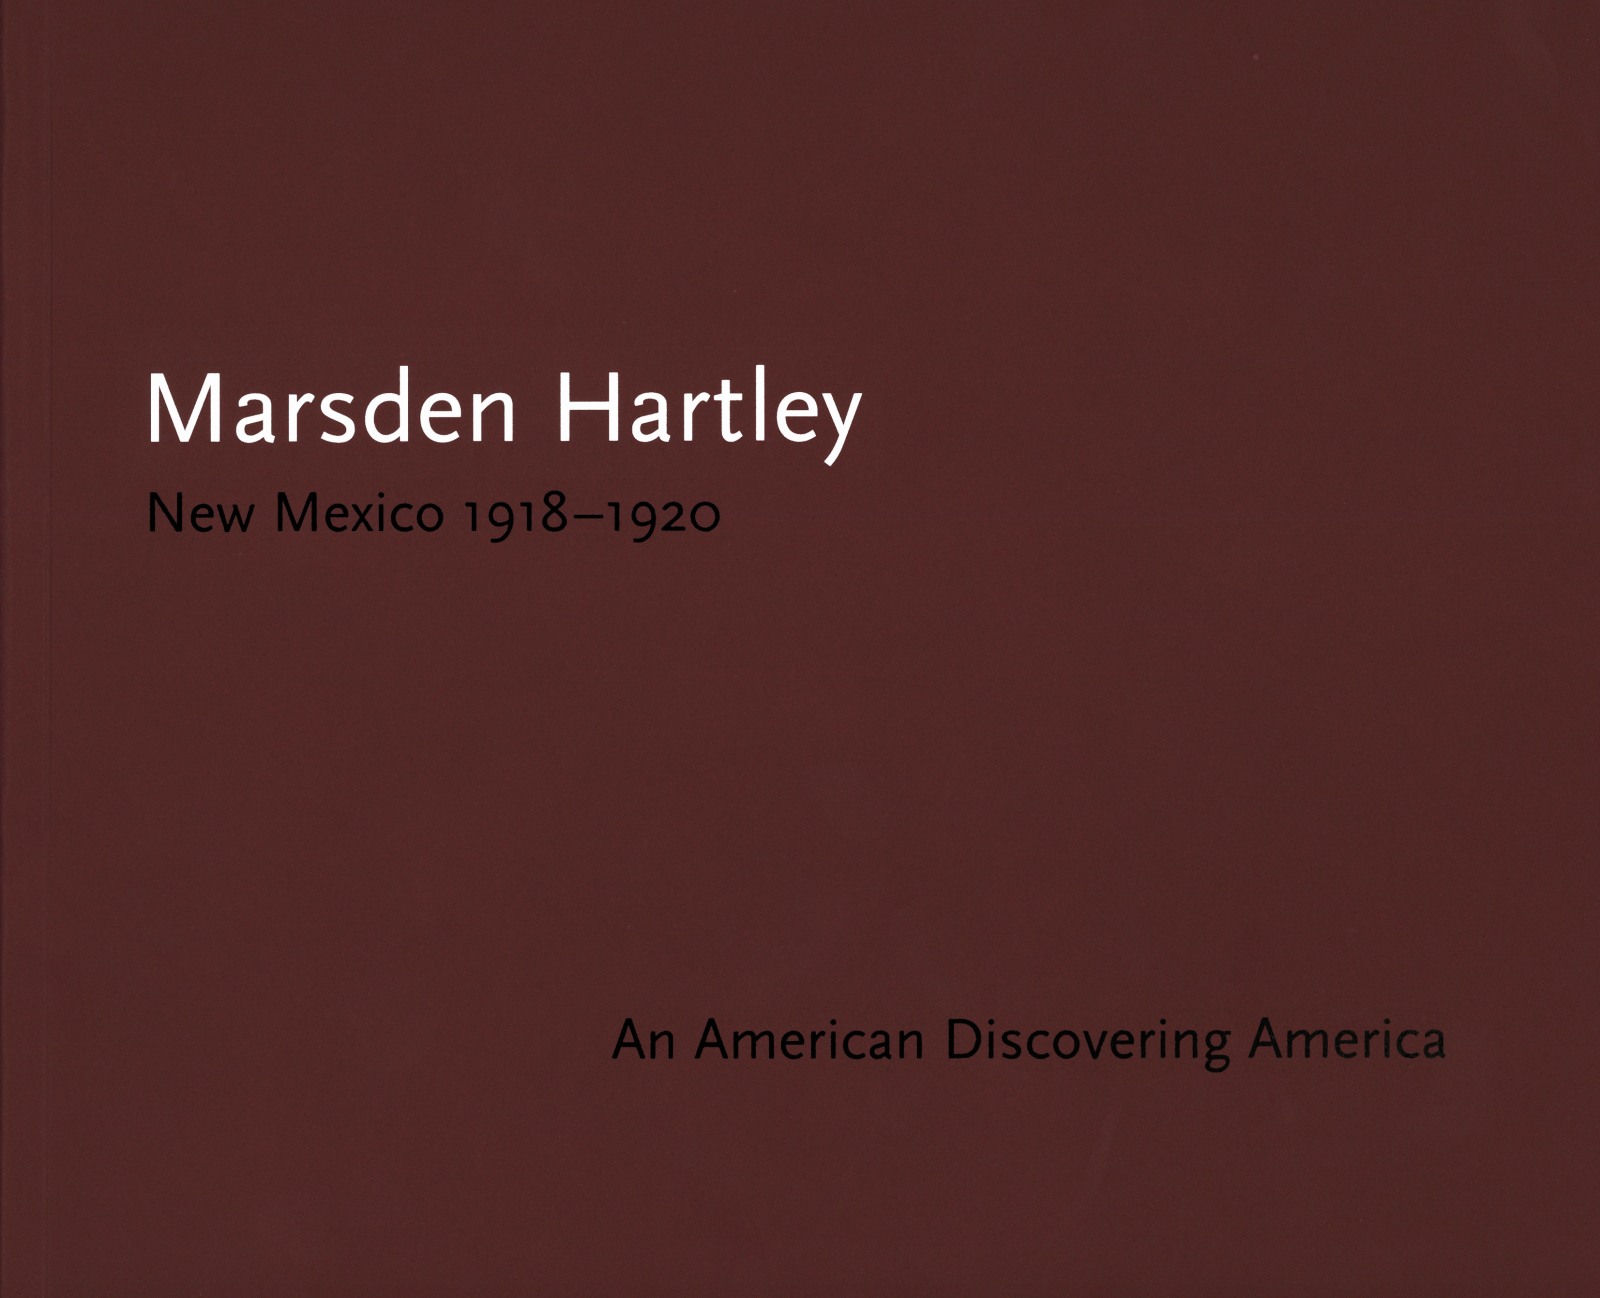 New Mexico 1918-1920 - Marsden Hartley - Catalogues - Alexandre Gallery